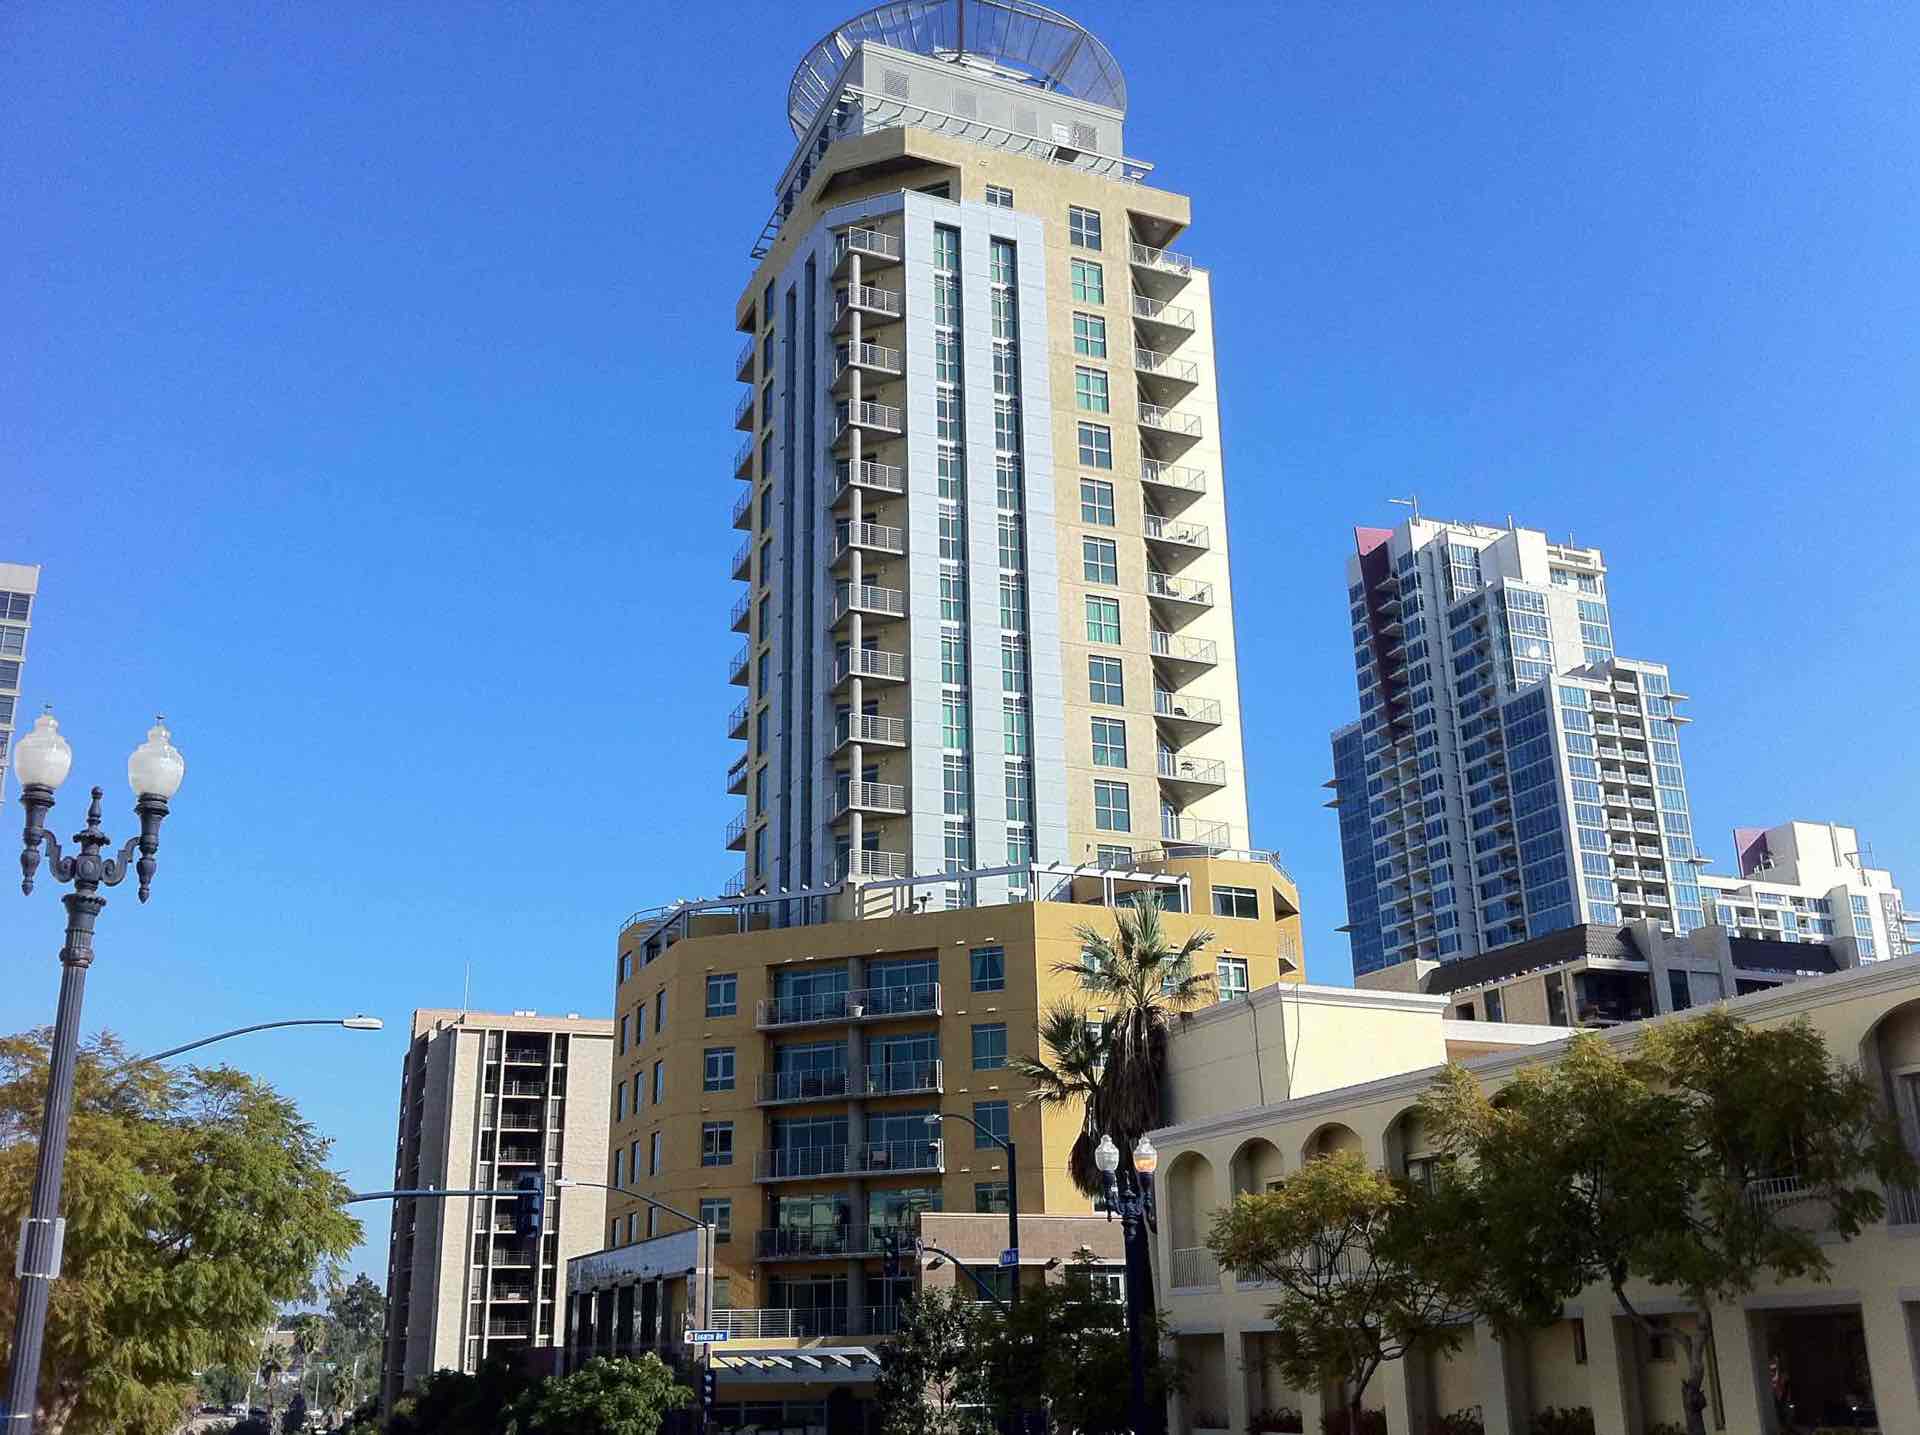 Cortez Blu condos in downtown San Diego Cortez Hill District